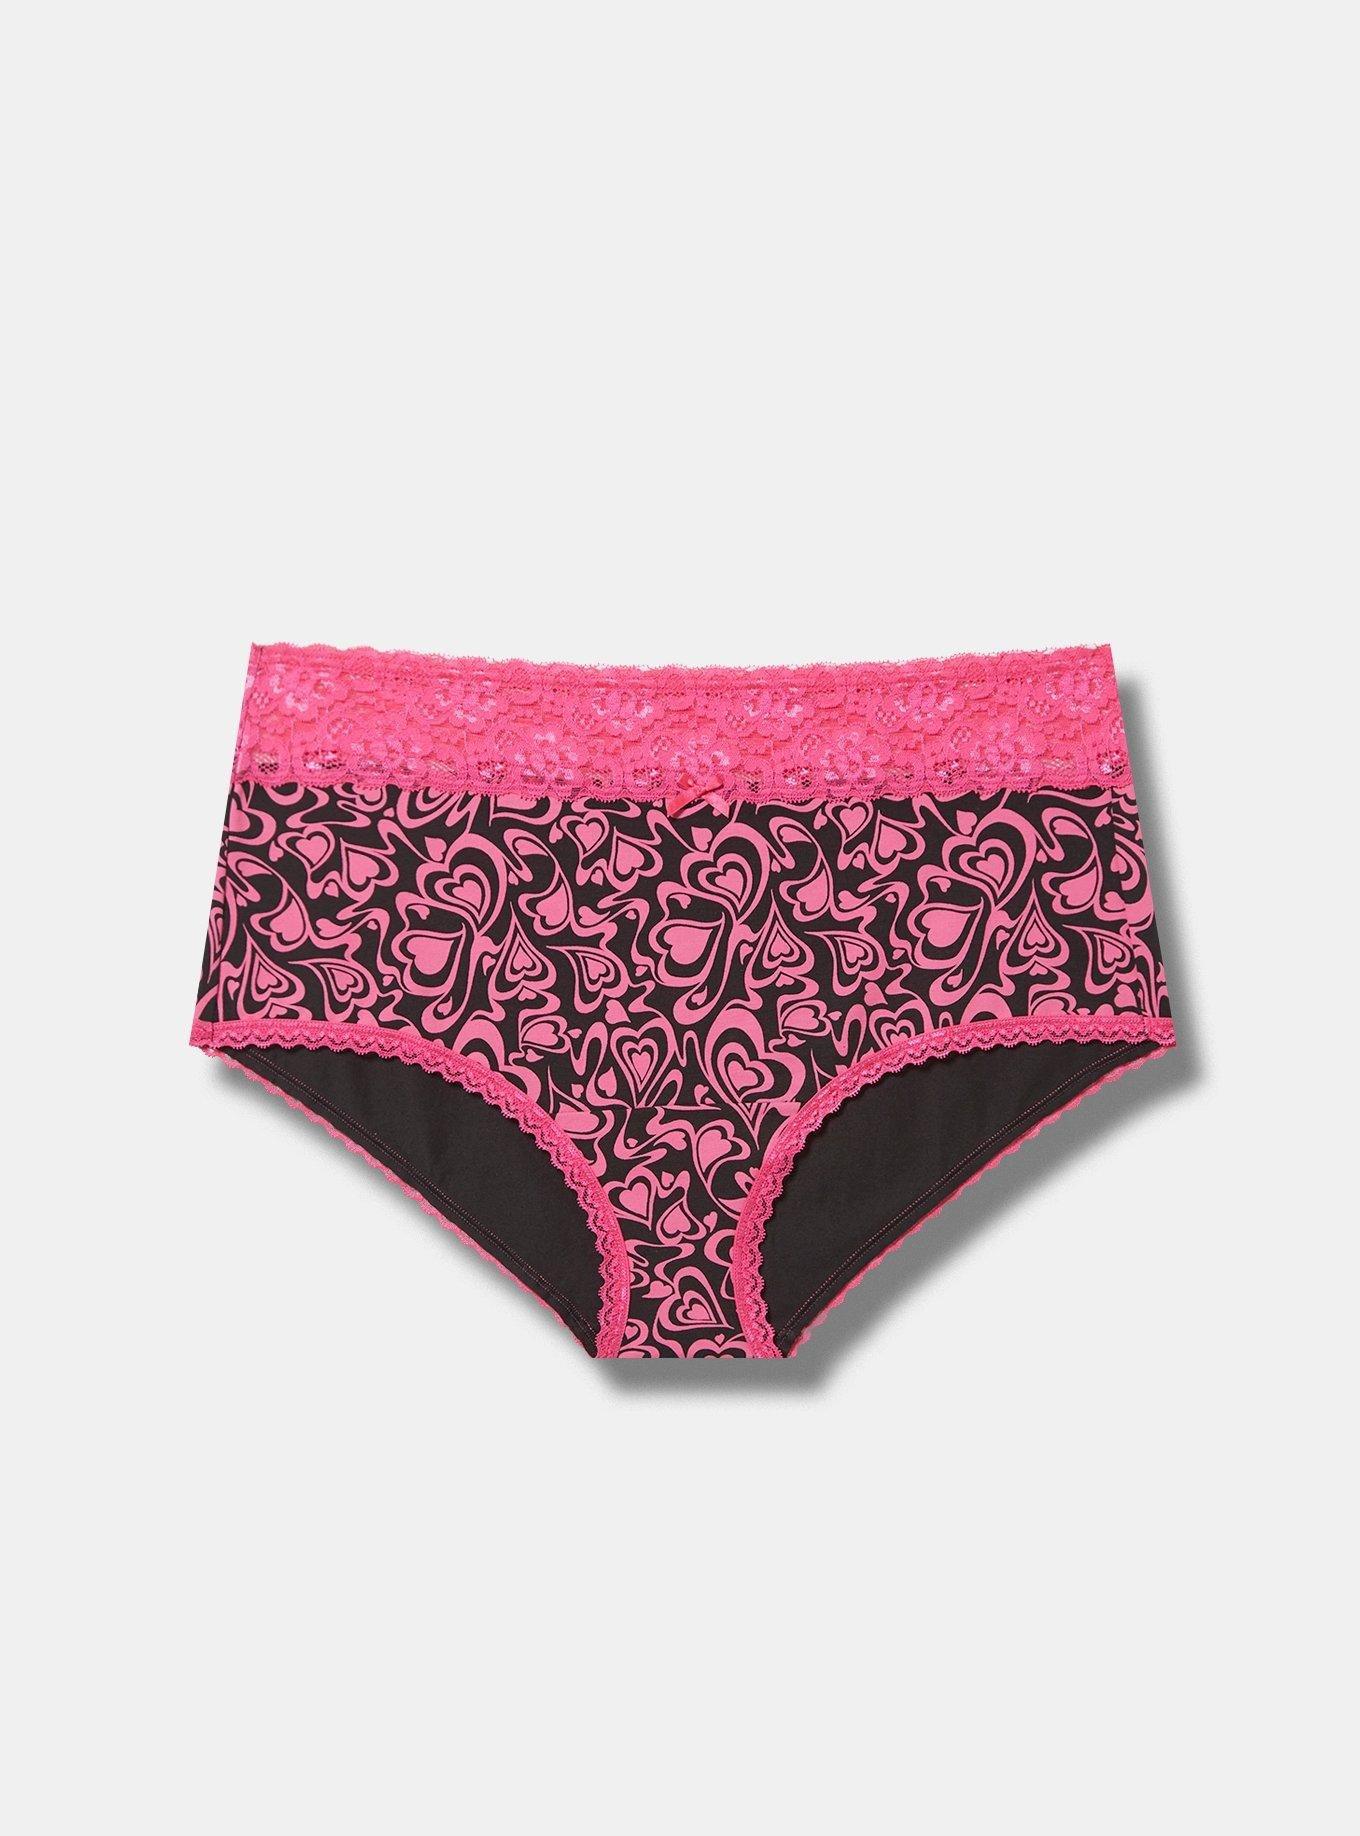 N-Gal Panties Delicate Both Side Lace Mid Waist Underwear Lingerie